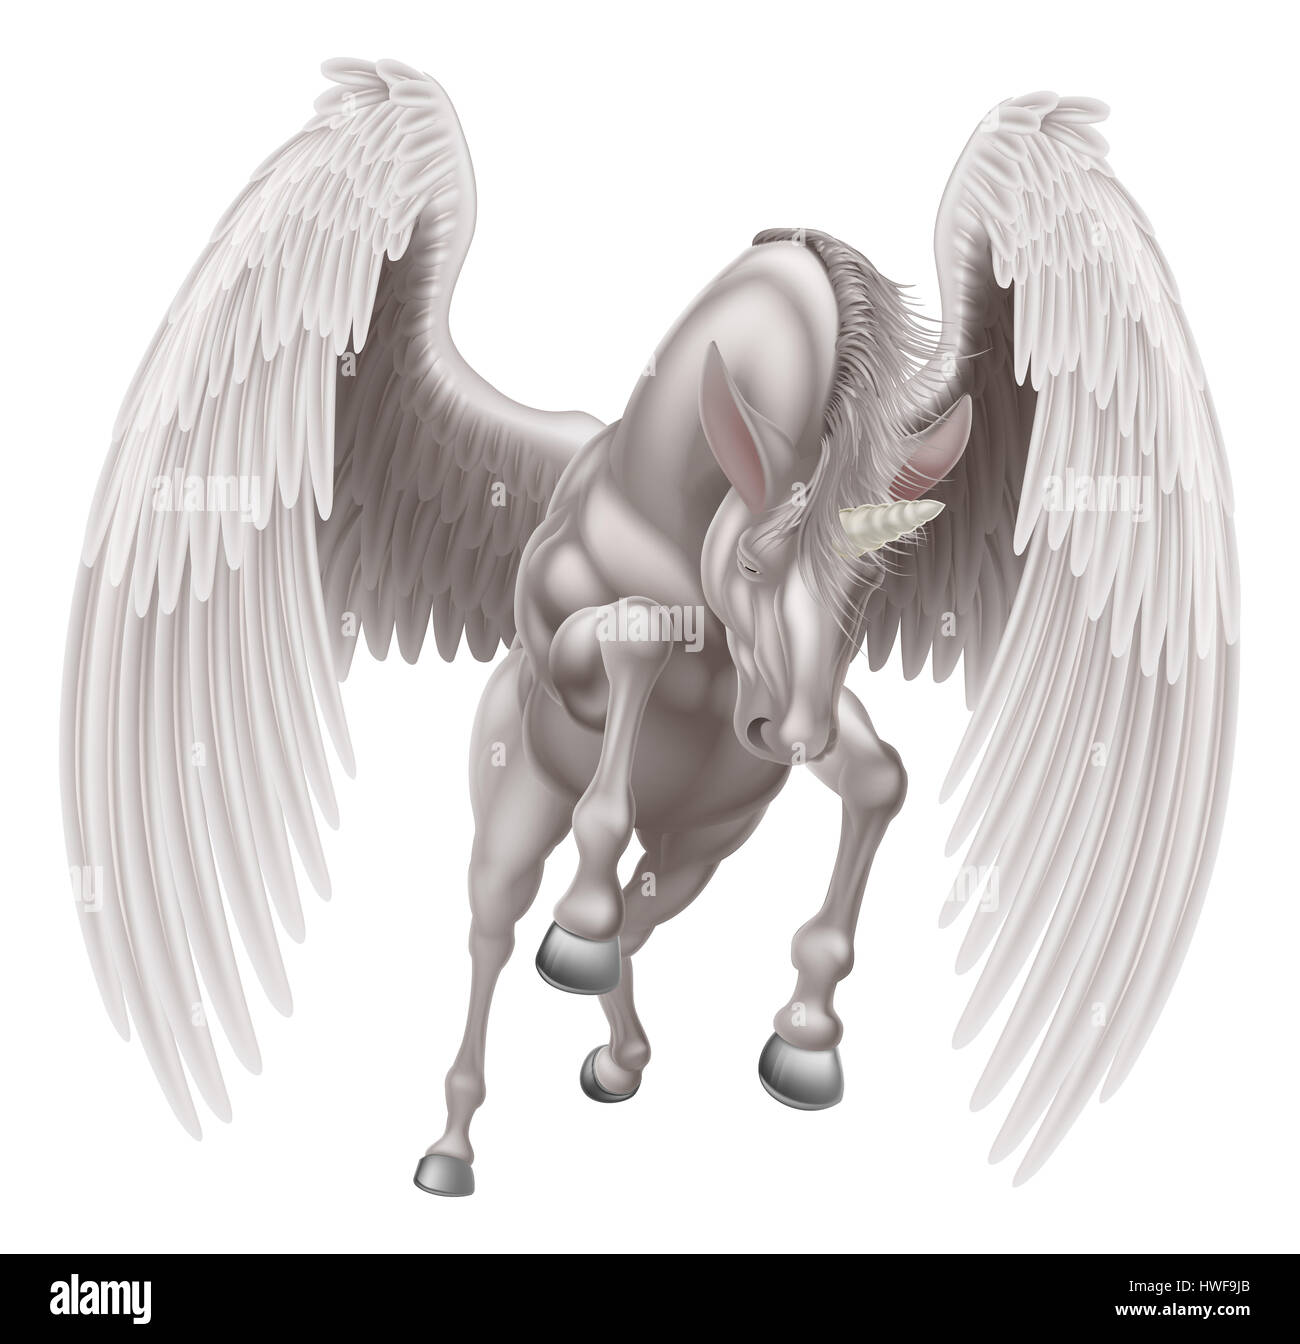 Una illustrazione di un bianco unicorno pegasus mitologico cavallo alato con tromba allevamento sulle zampe posteriori o la corsa, il salto o battenti visto dal p. Foto Stock